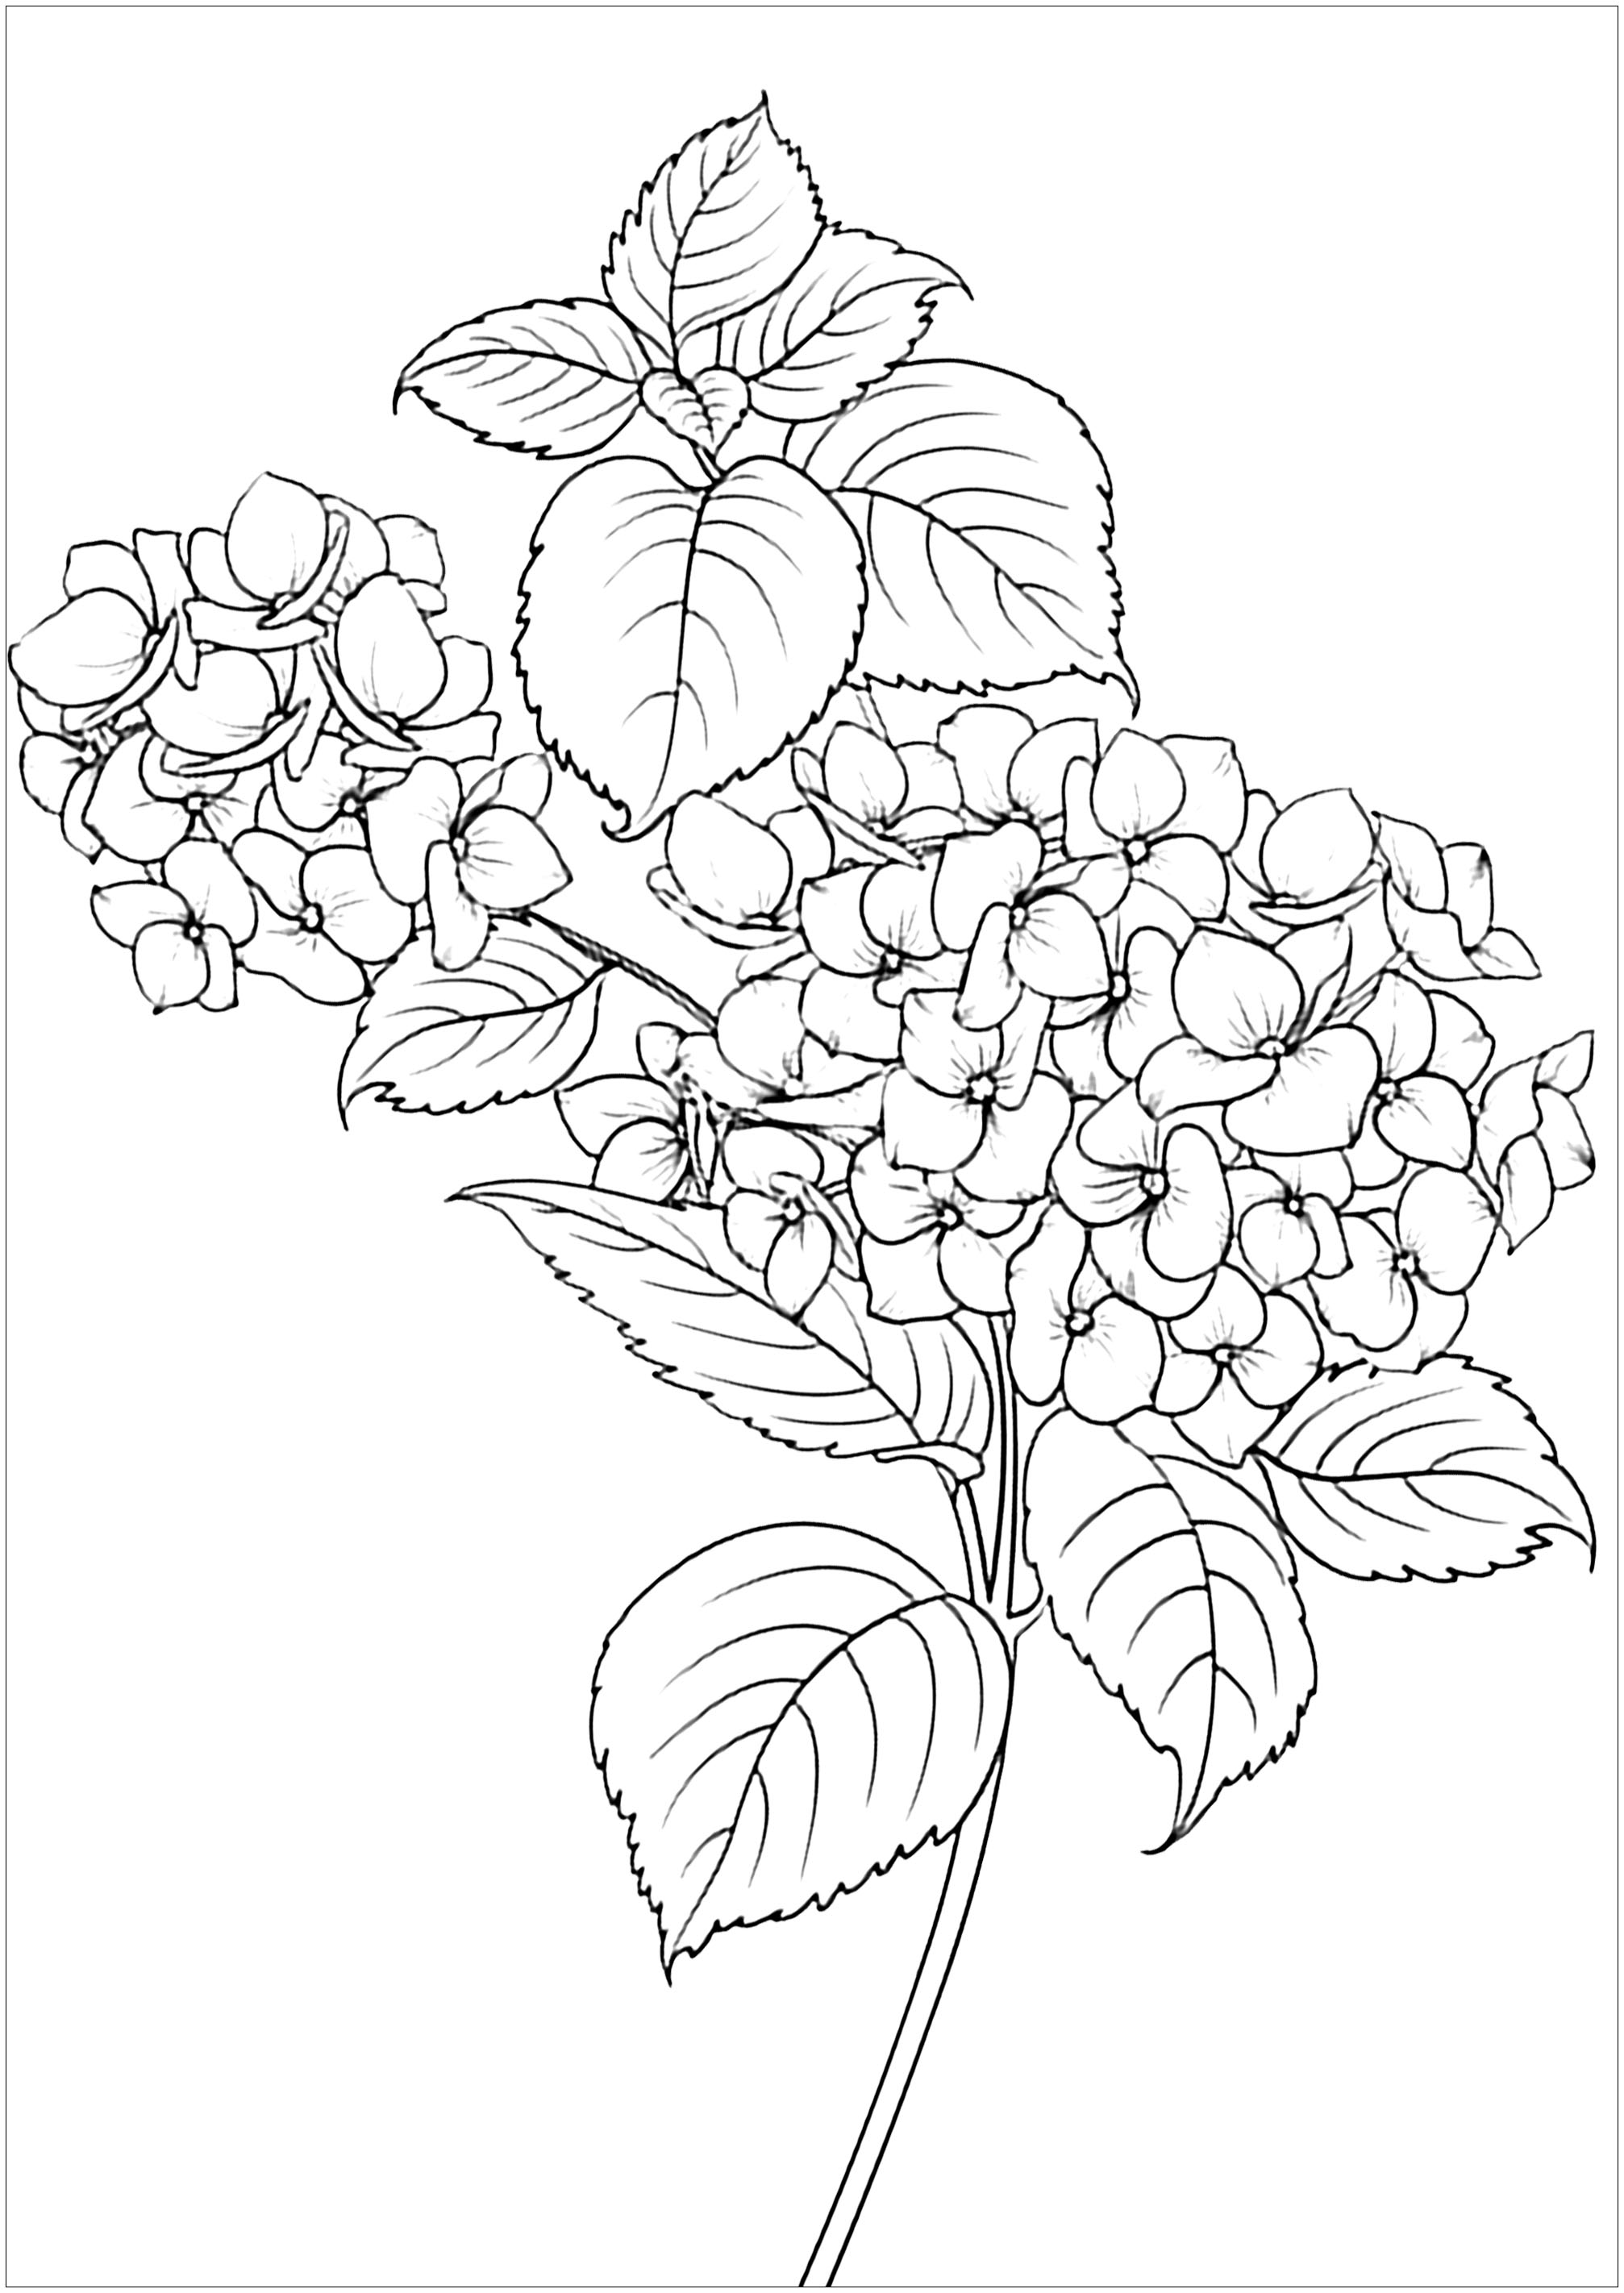 Sencilla página para colorear con elegantes flores y hojas